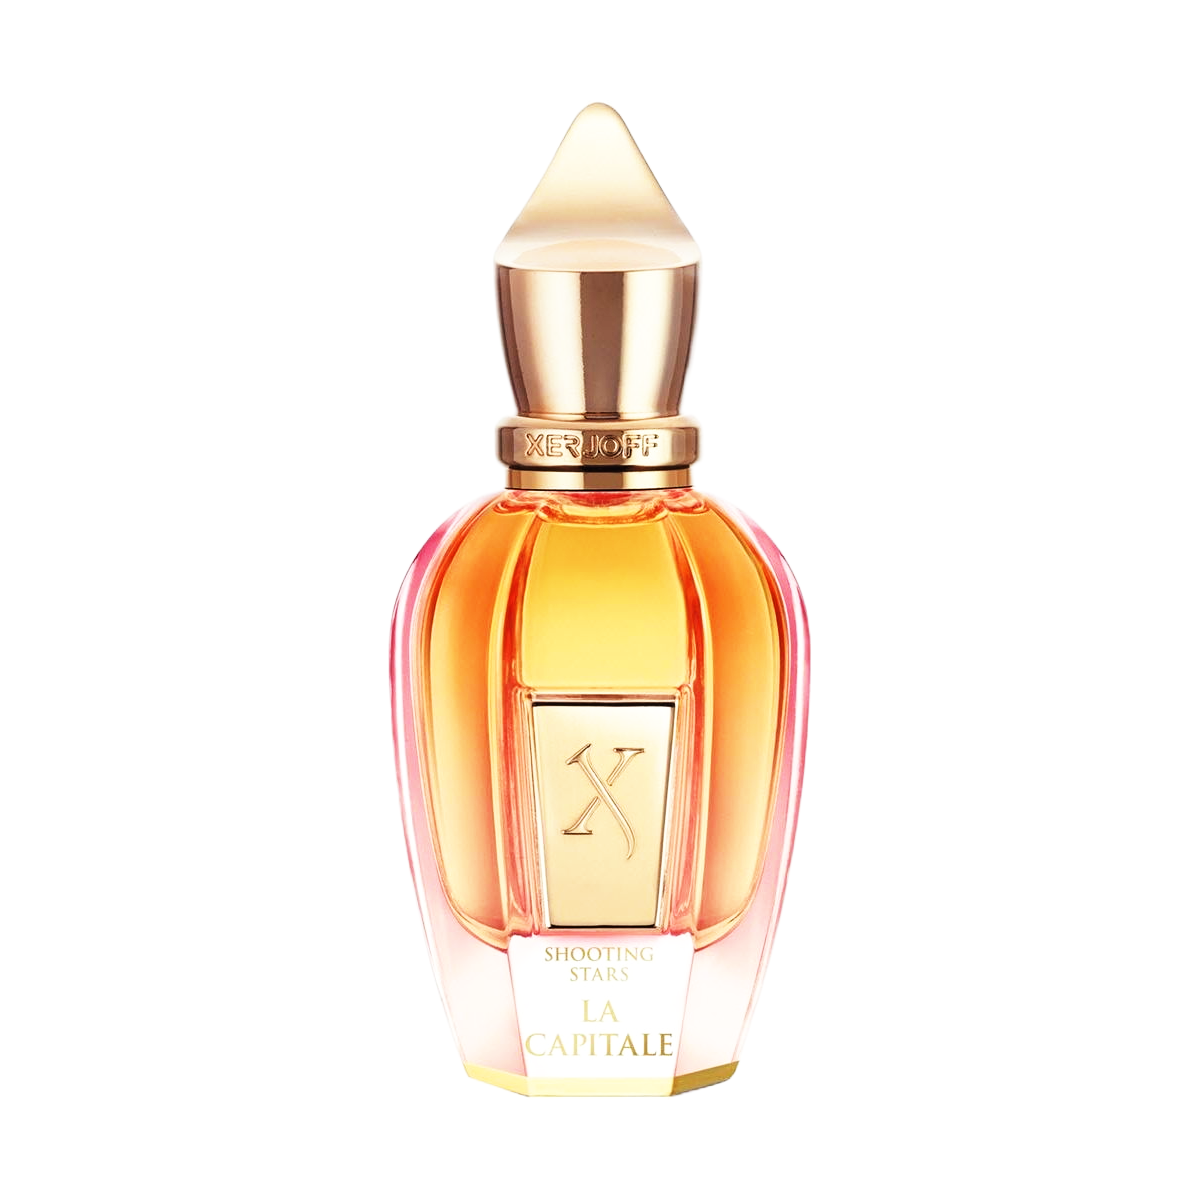 Louis Vuitton Sur la Route Perfume Sample & Decants